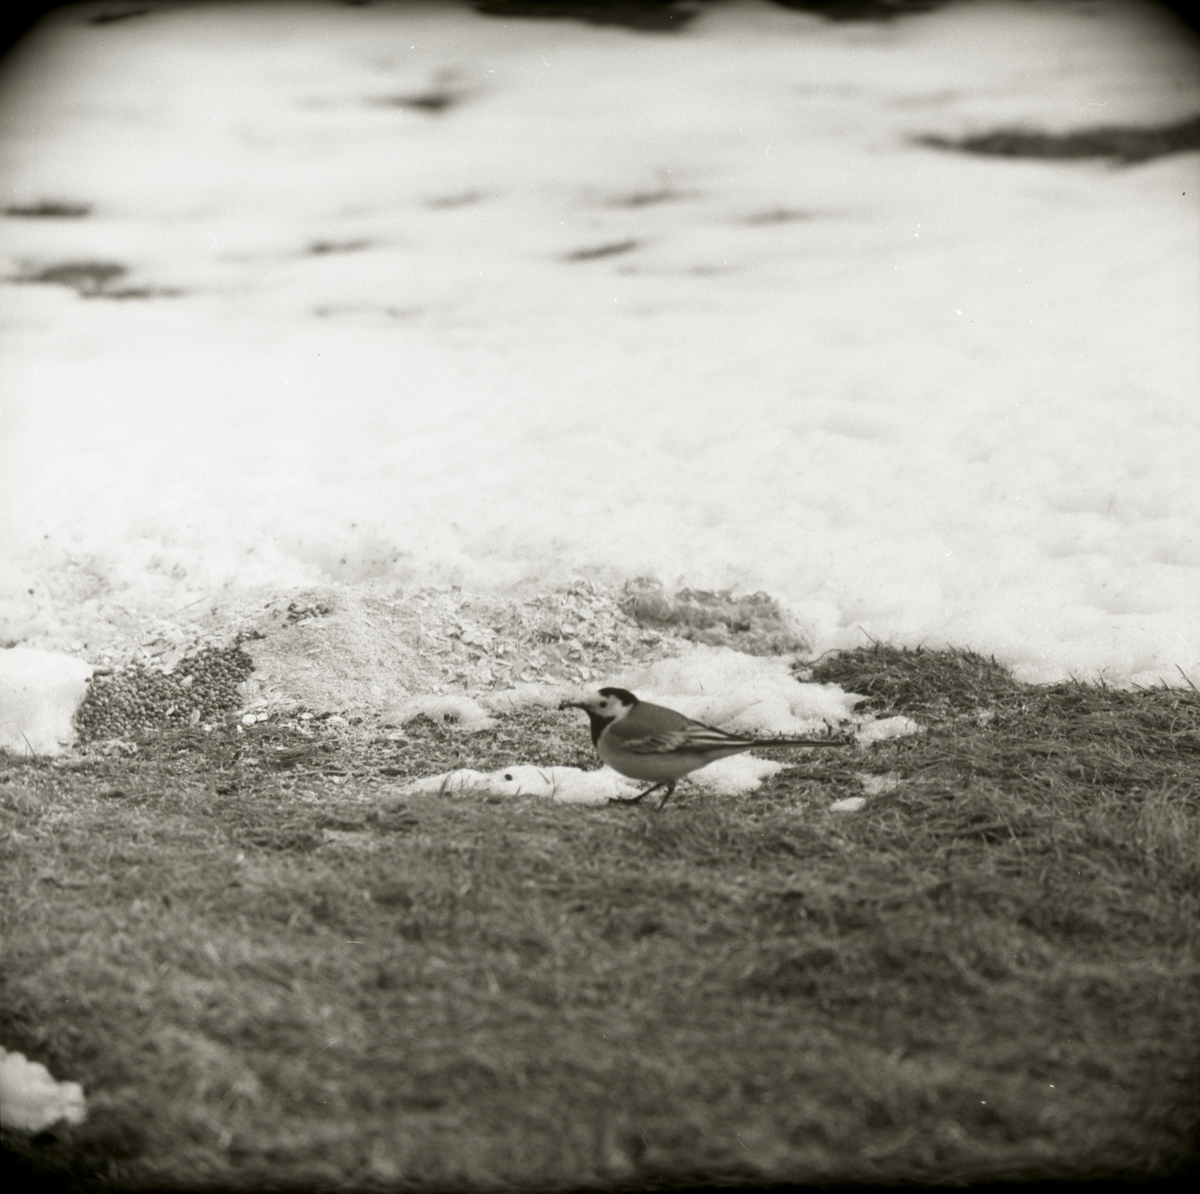 En sädesärla går runt bland snö och barmark med mat i näbben, maj 1967.